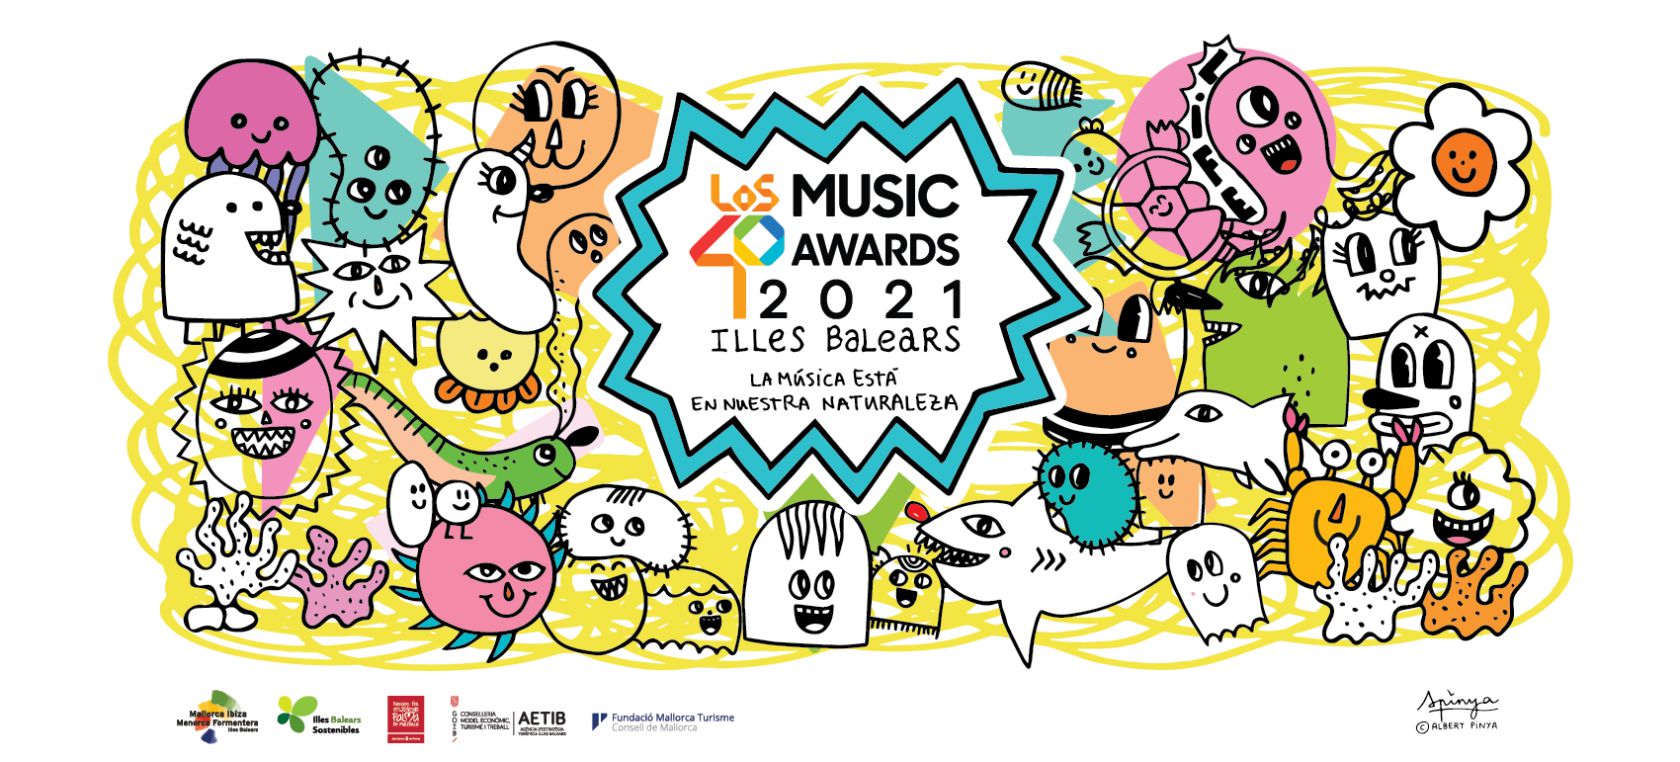 LOS40 Music Awards 2021 Illes Balears: horario, dónde verlo, invitados, presentadores...